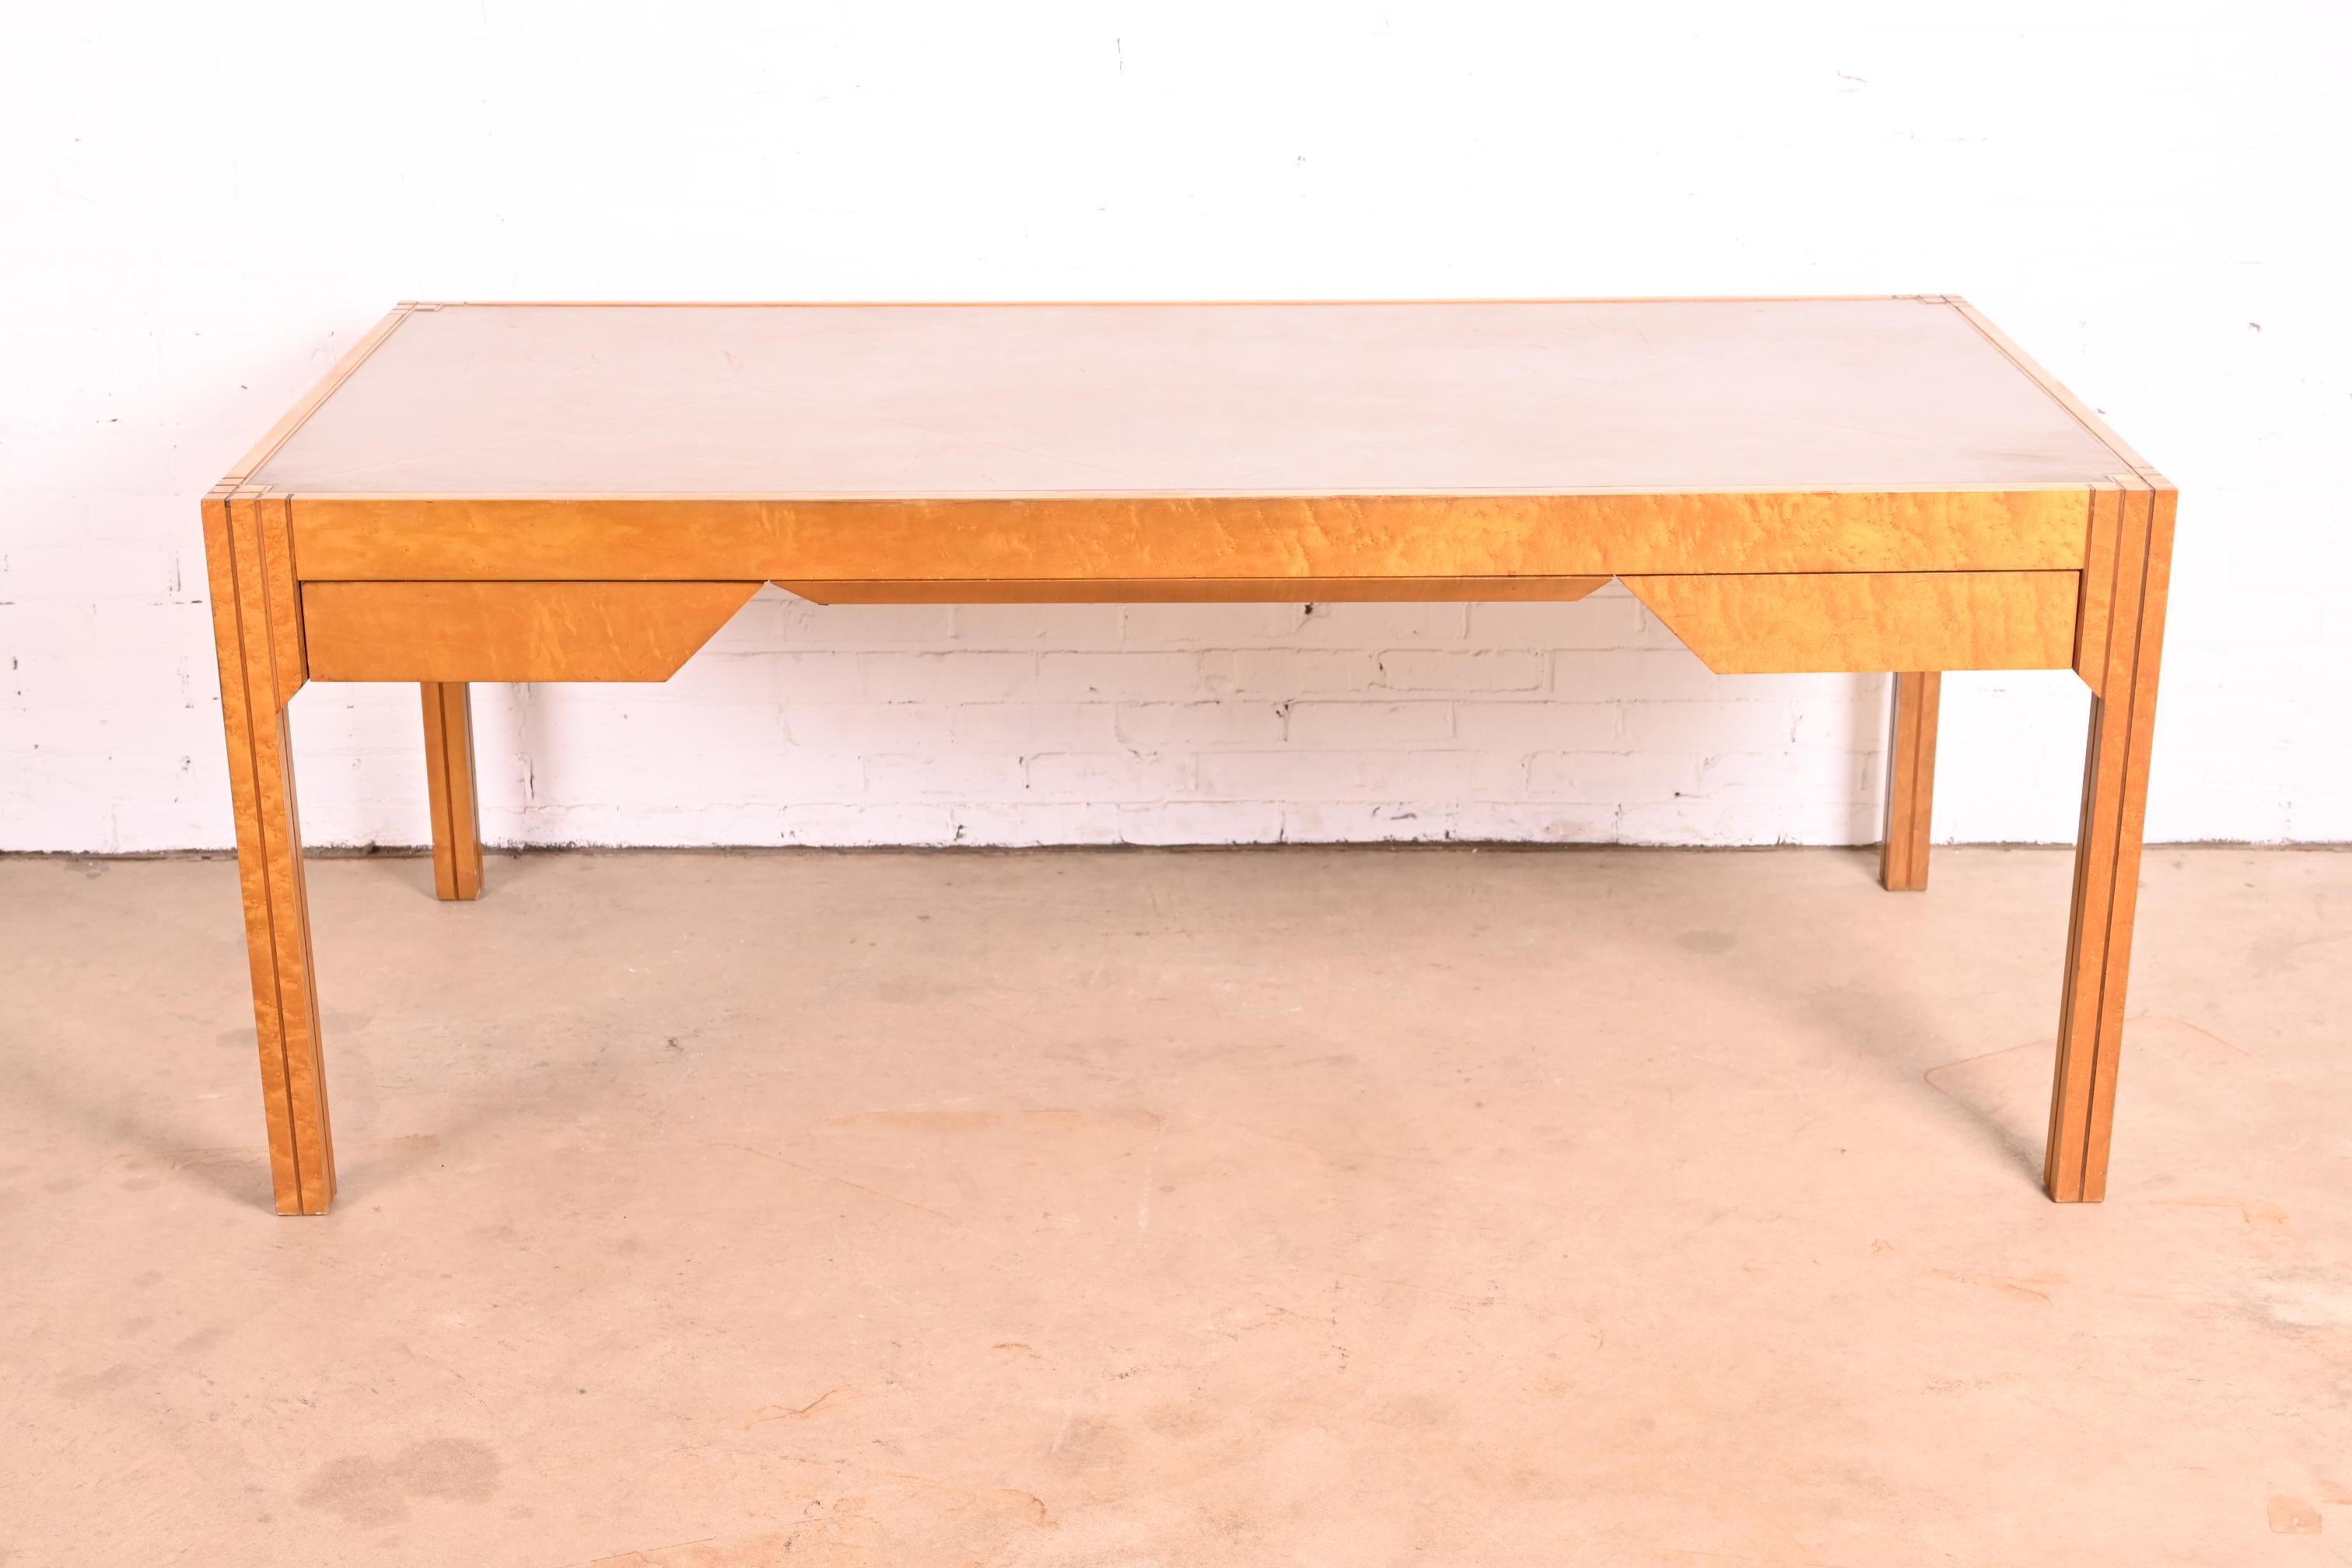 Ein äußerst seltener und außergewöhnlicher Art-Déco-Schreibtisch, entworfen 1984 von Pierre Paulin für Baker Furniture. Der Schreibtisch ist aus wunderschönem Vogelaugenahorn gefertigt und hat eine lederbezogene Schreibfläche. Dieser Schreibtisch